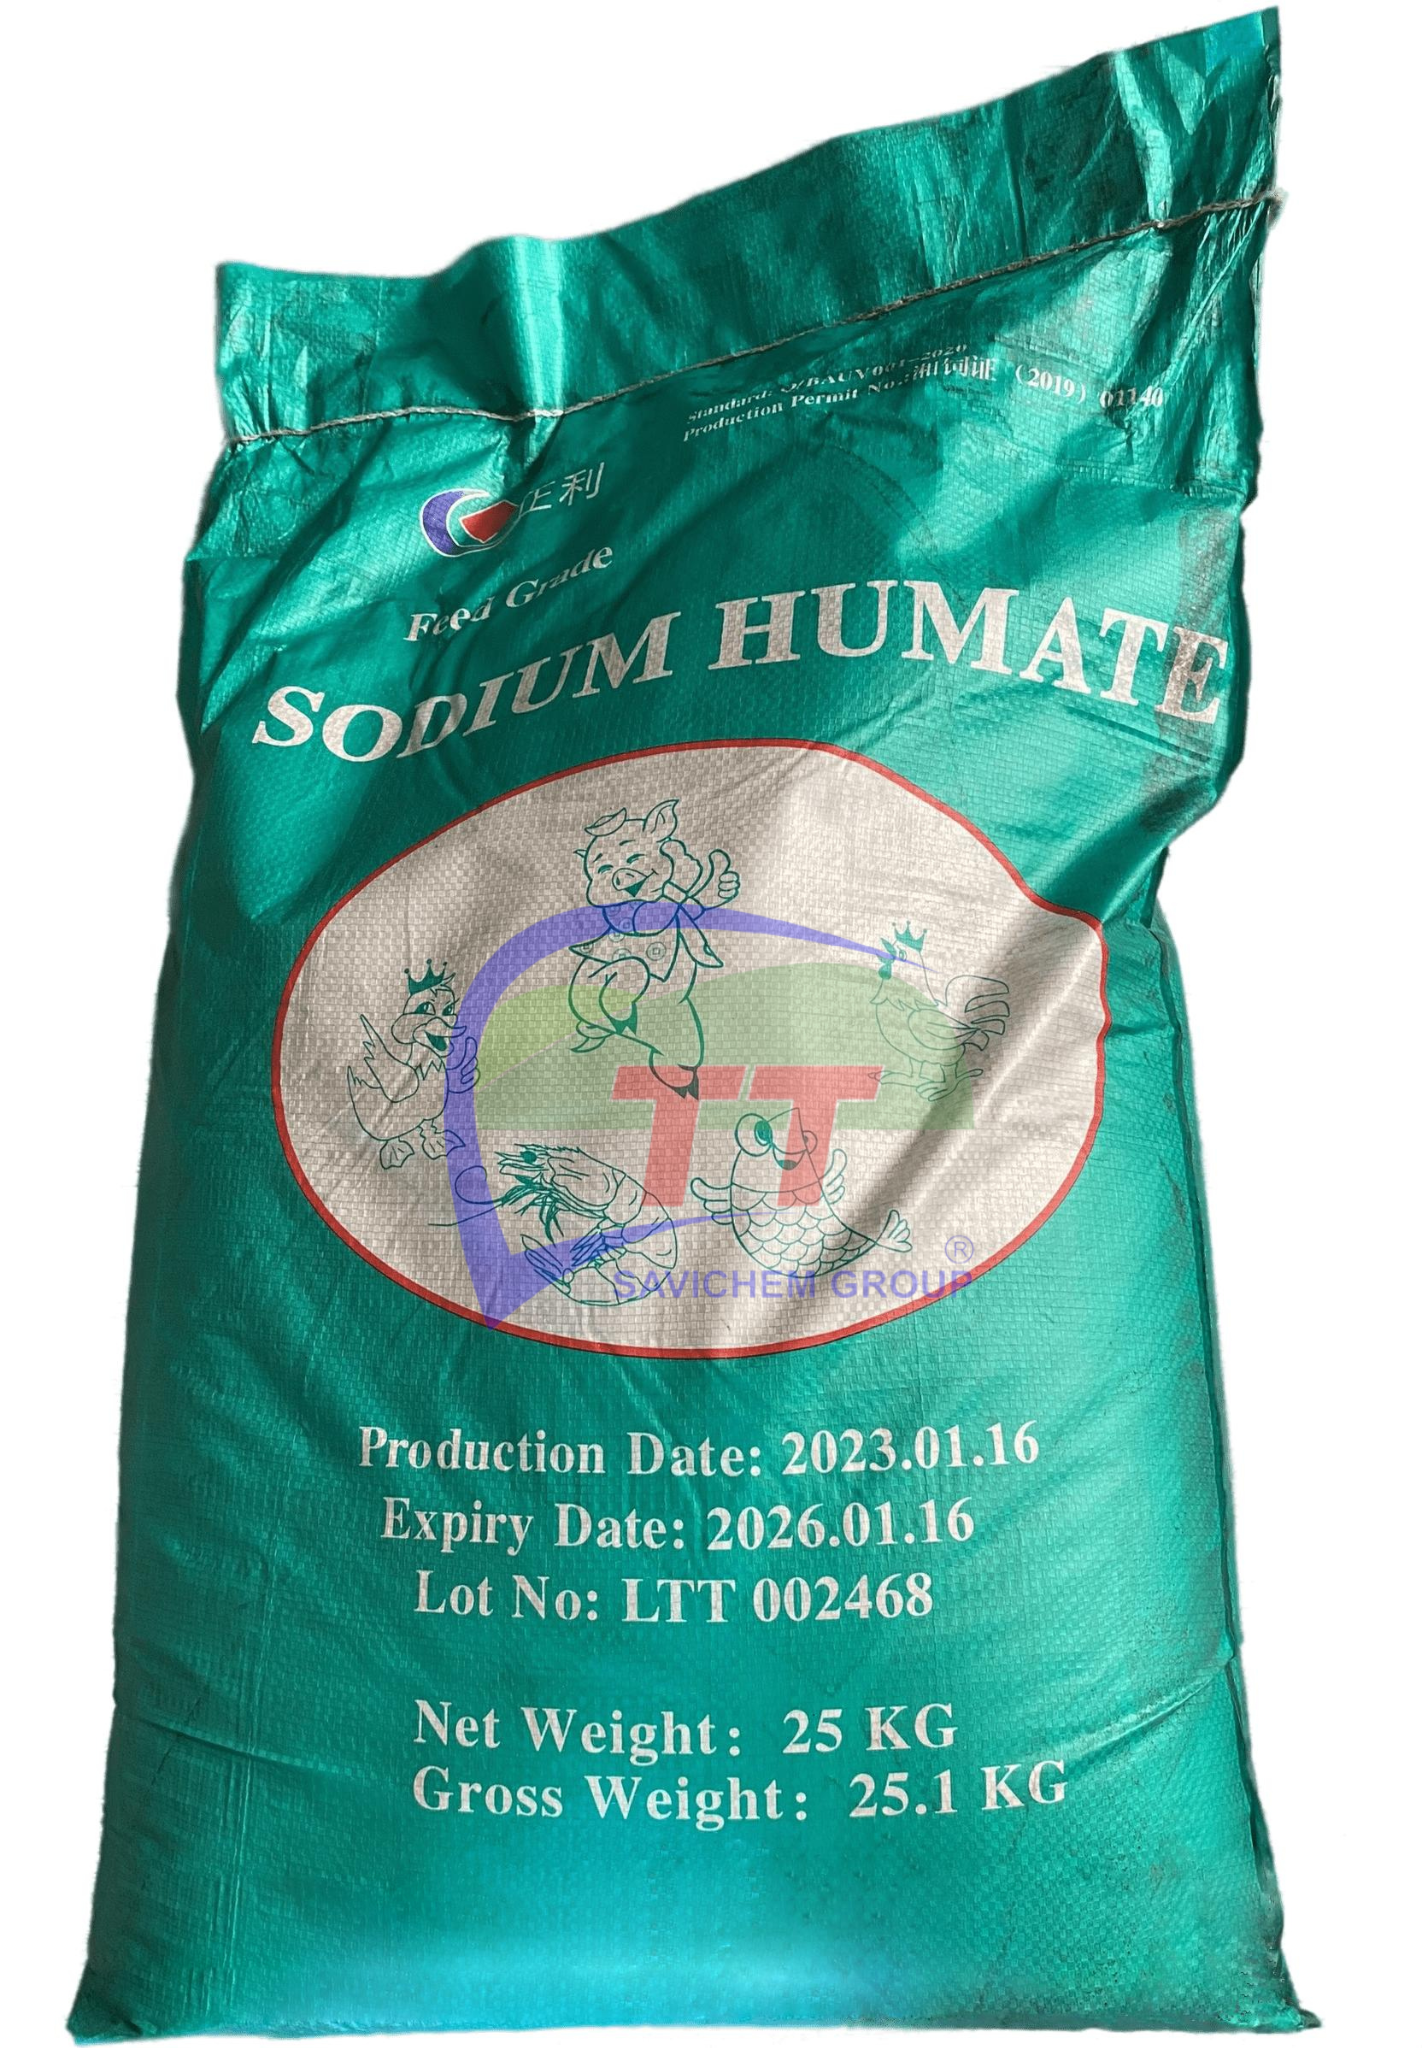 Sodium Humate, Nguyên Liệu Thức Ăn Chăn Nuôi